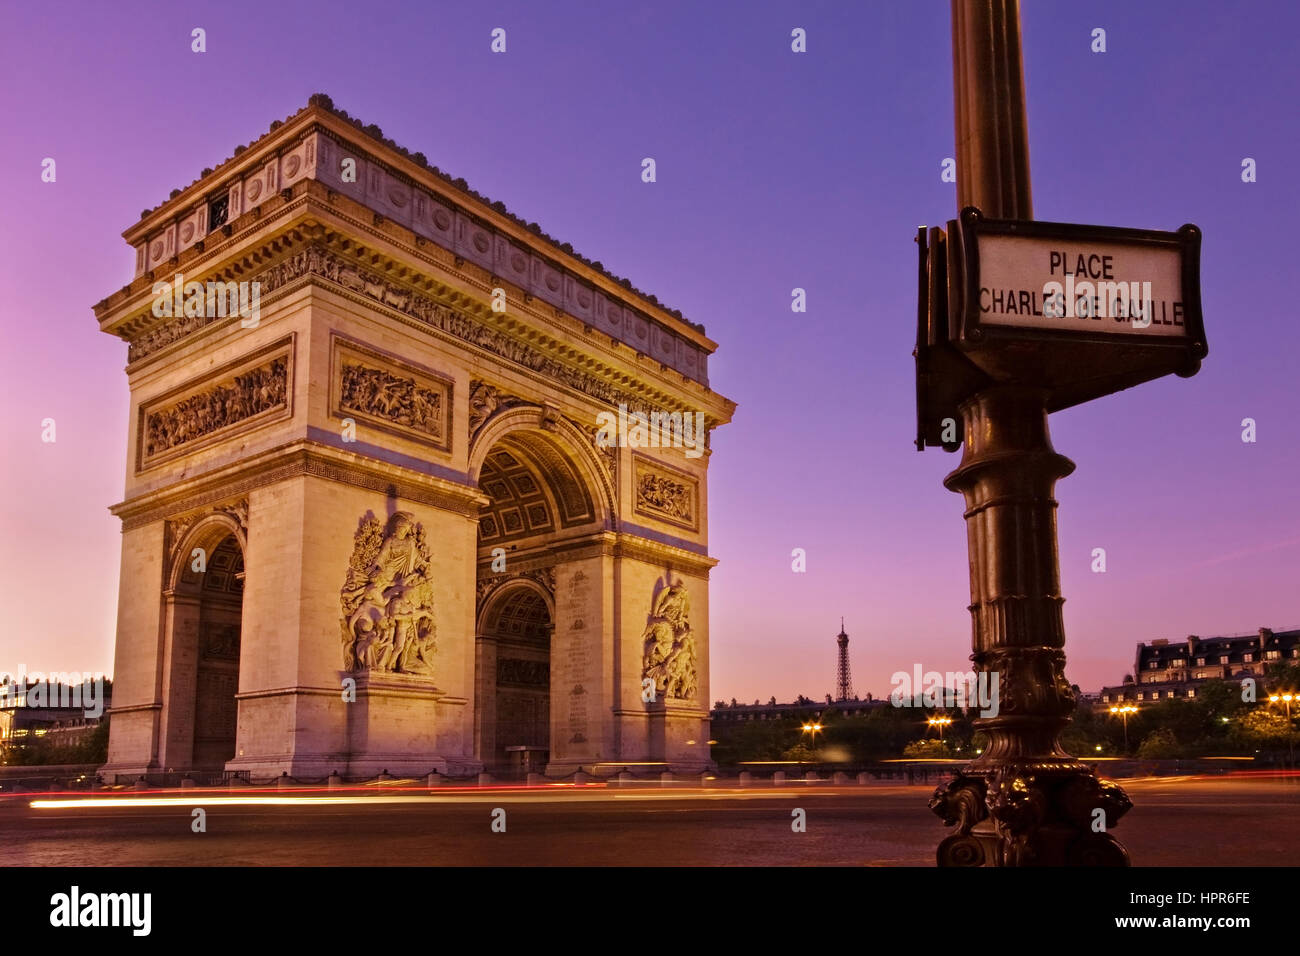 Alba all'Arc de Triomphe in Paris, Francia. Un segno su un lampione legge Place Charles de Gaulle e la Torre Eiffel è visibile in lontananza. Foto Stock